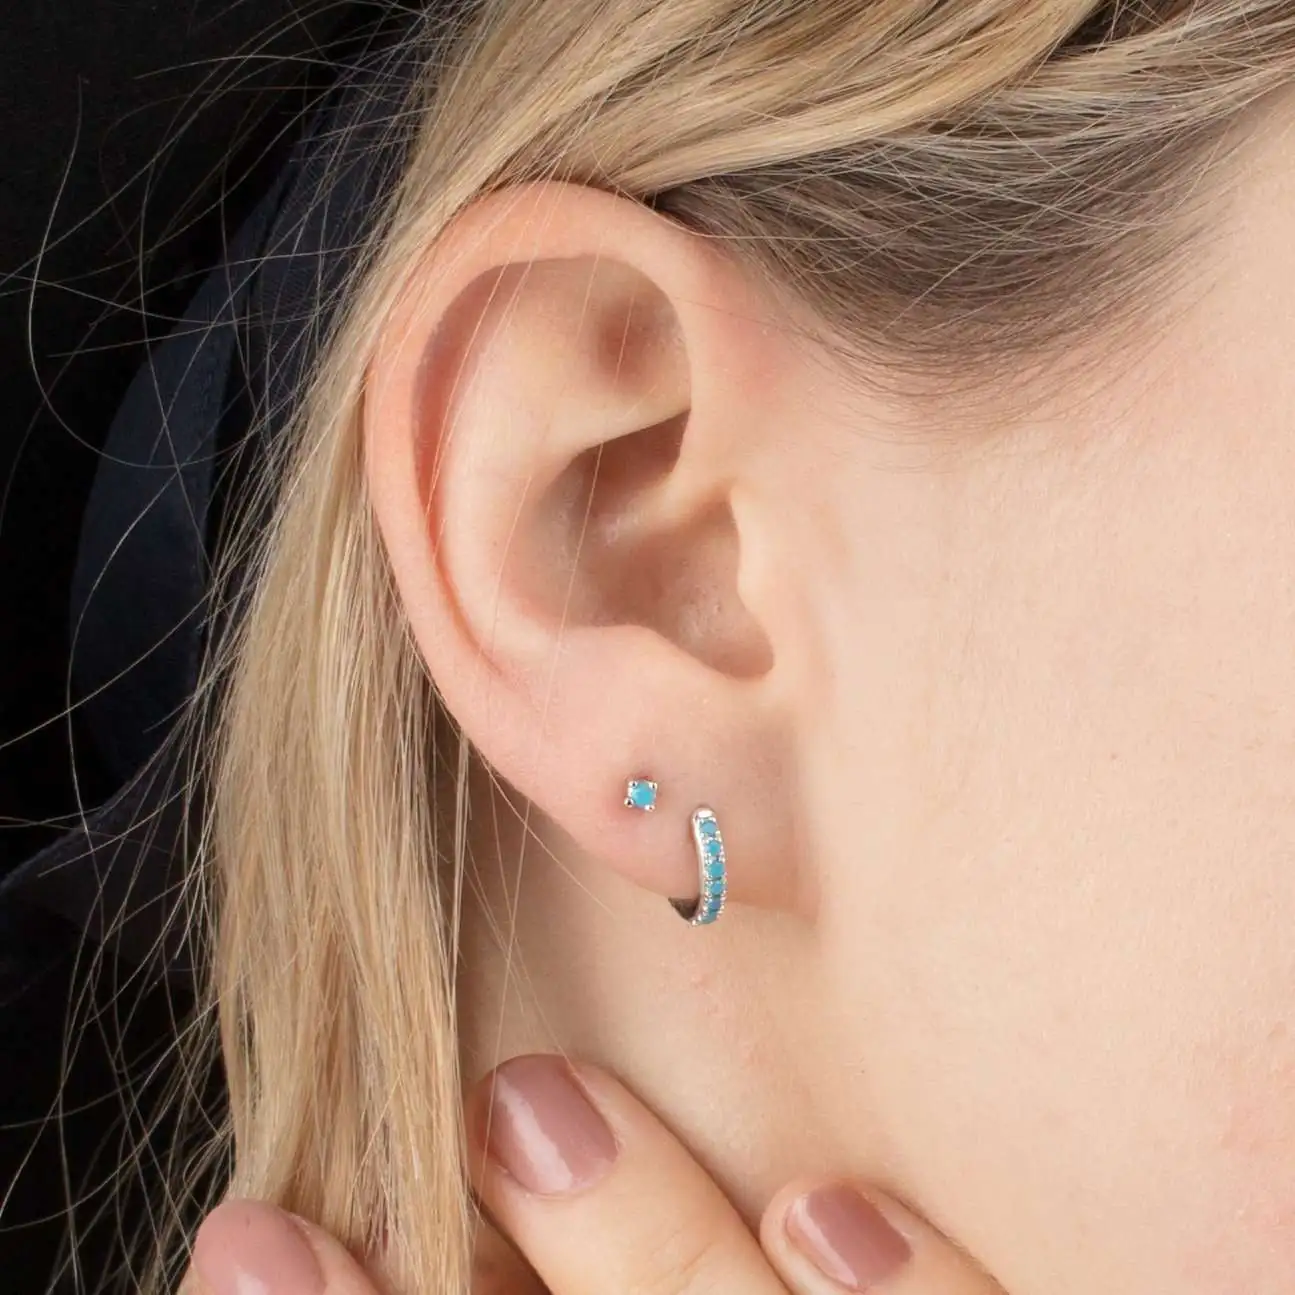 earrings-huggie-hoop-earrings-with-turquoise-stones-3_1800x1800